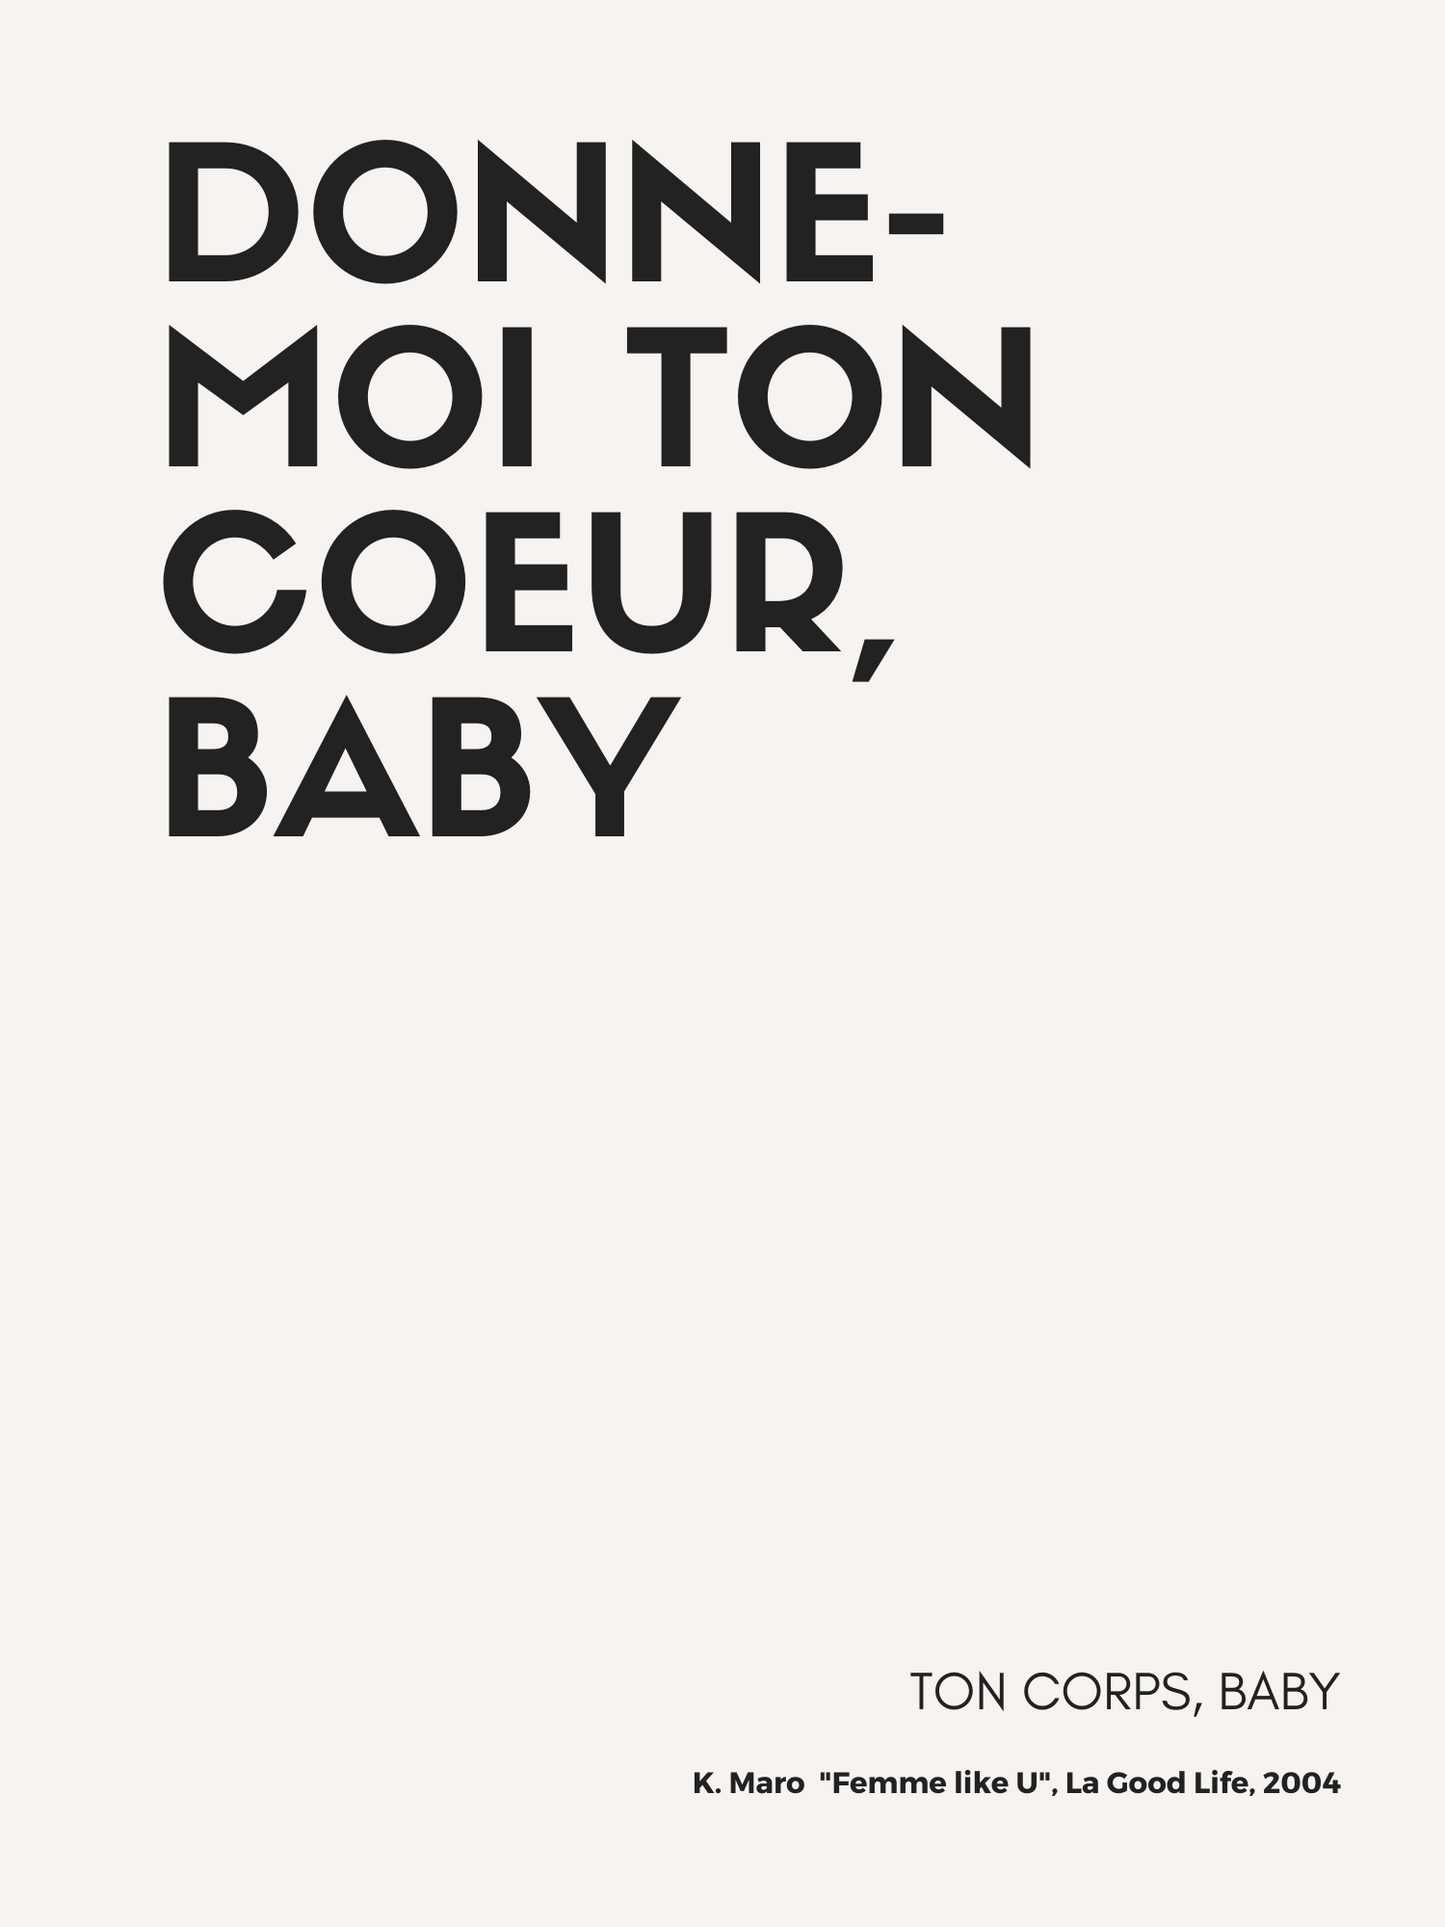 Affiche "Donne-moi ton ♥ baby" inspirée par K. Maro